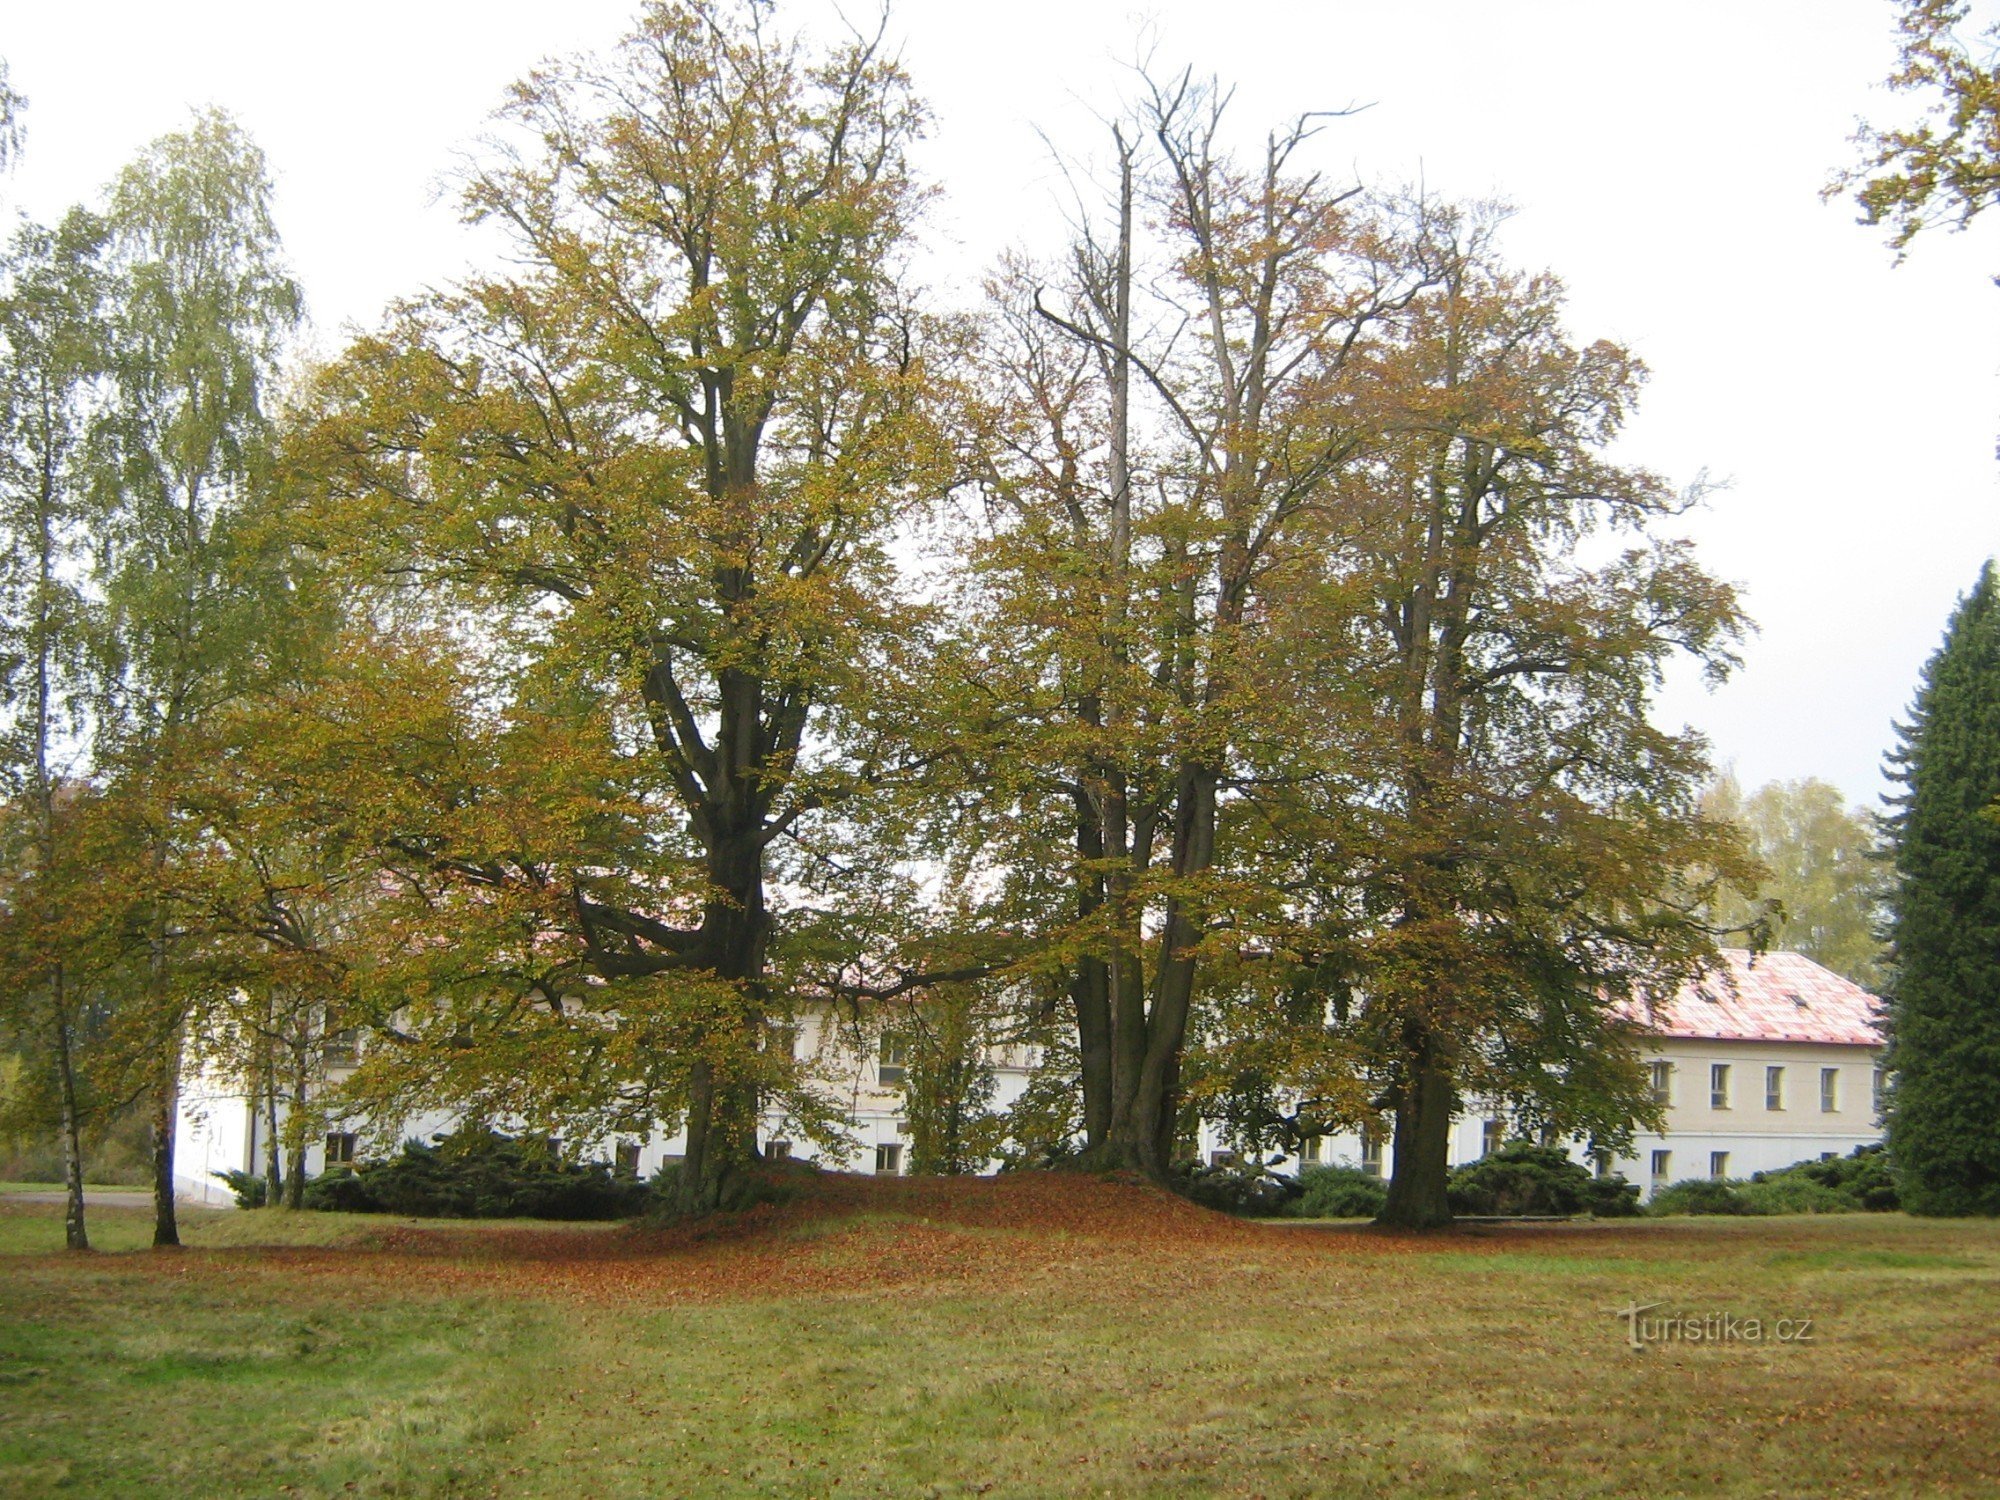 Březina - park és kastély